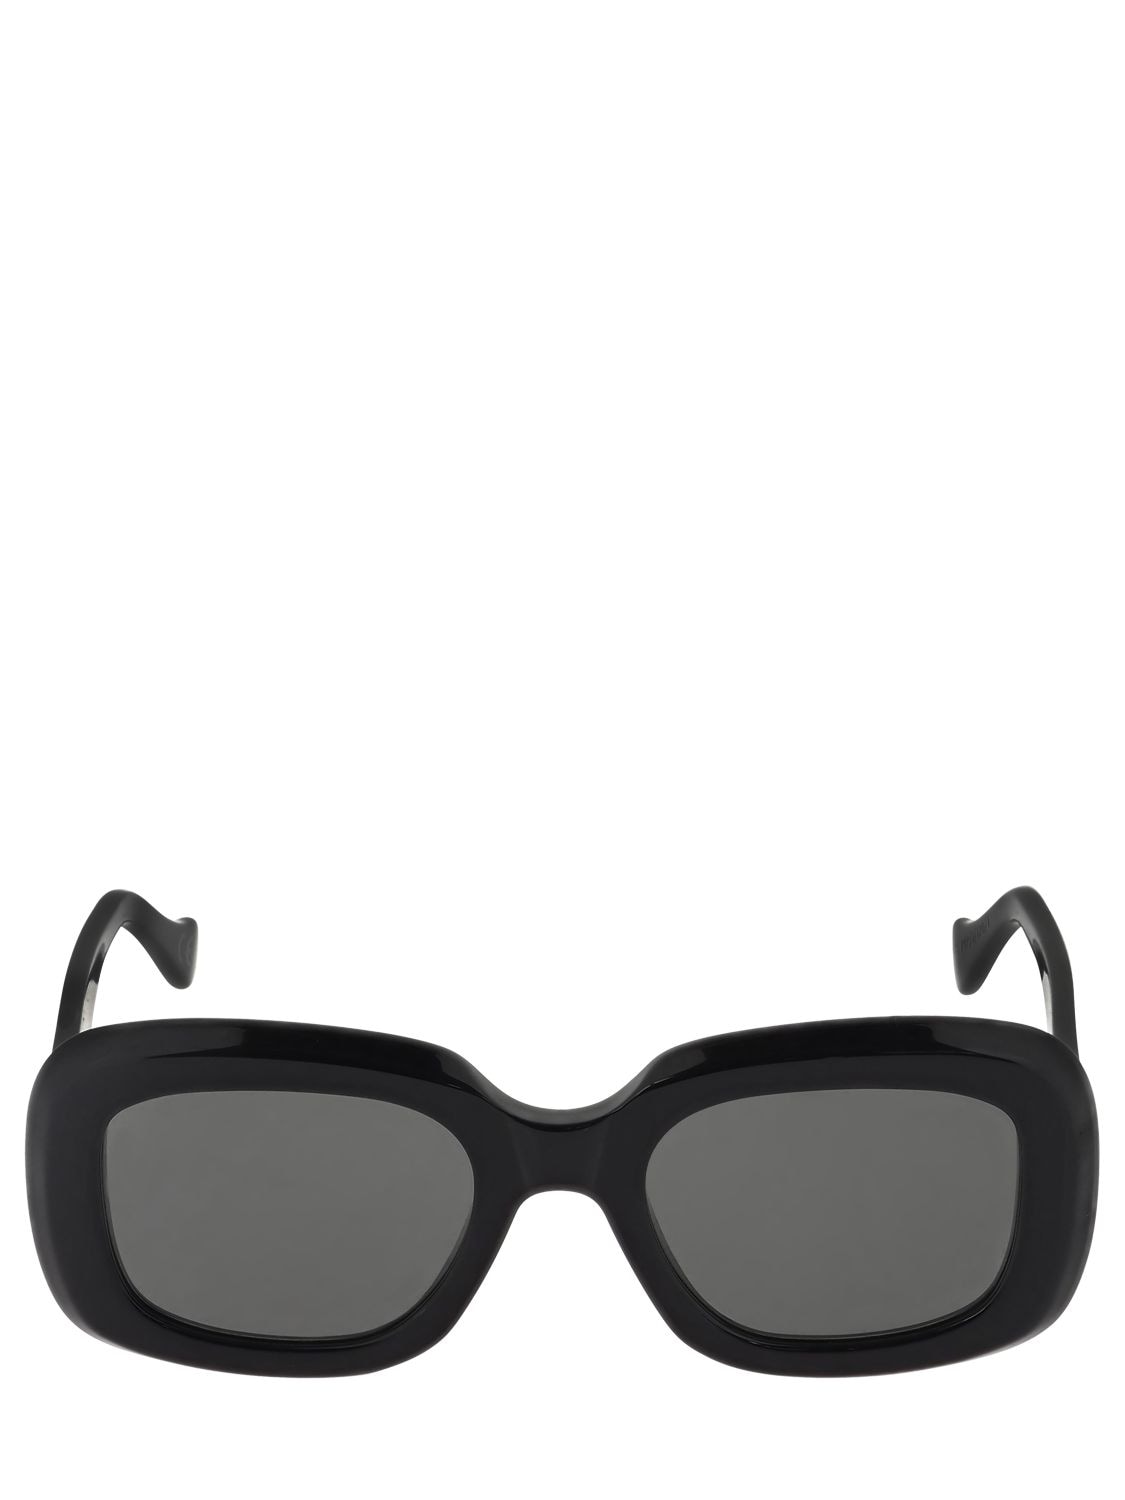 Retrosuperfuture Virgo Black Acetate Sunglasses